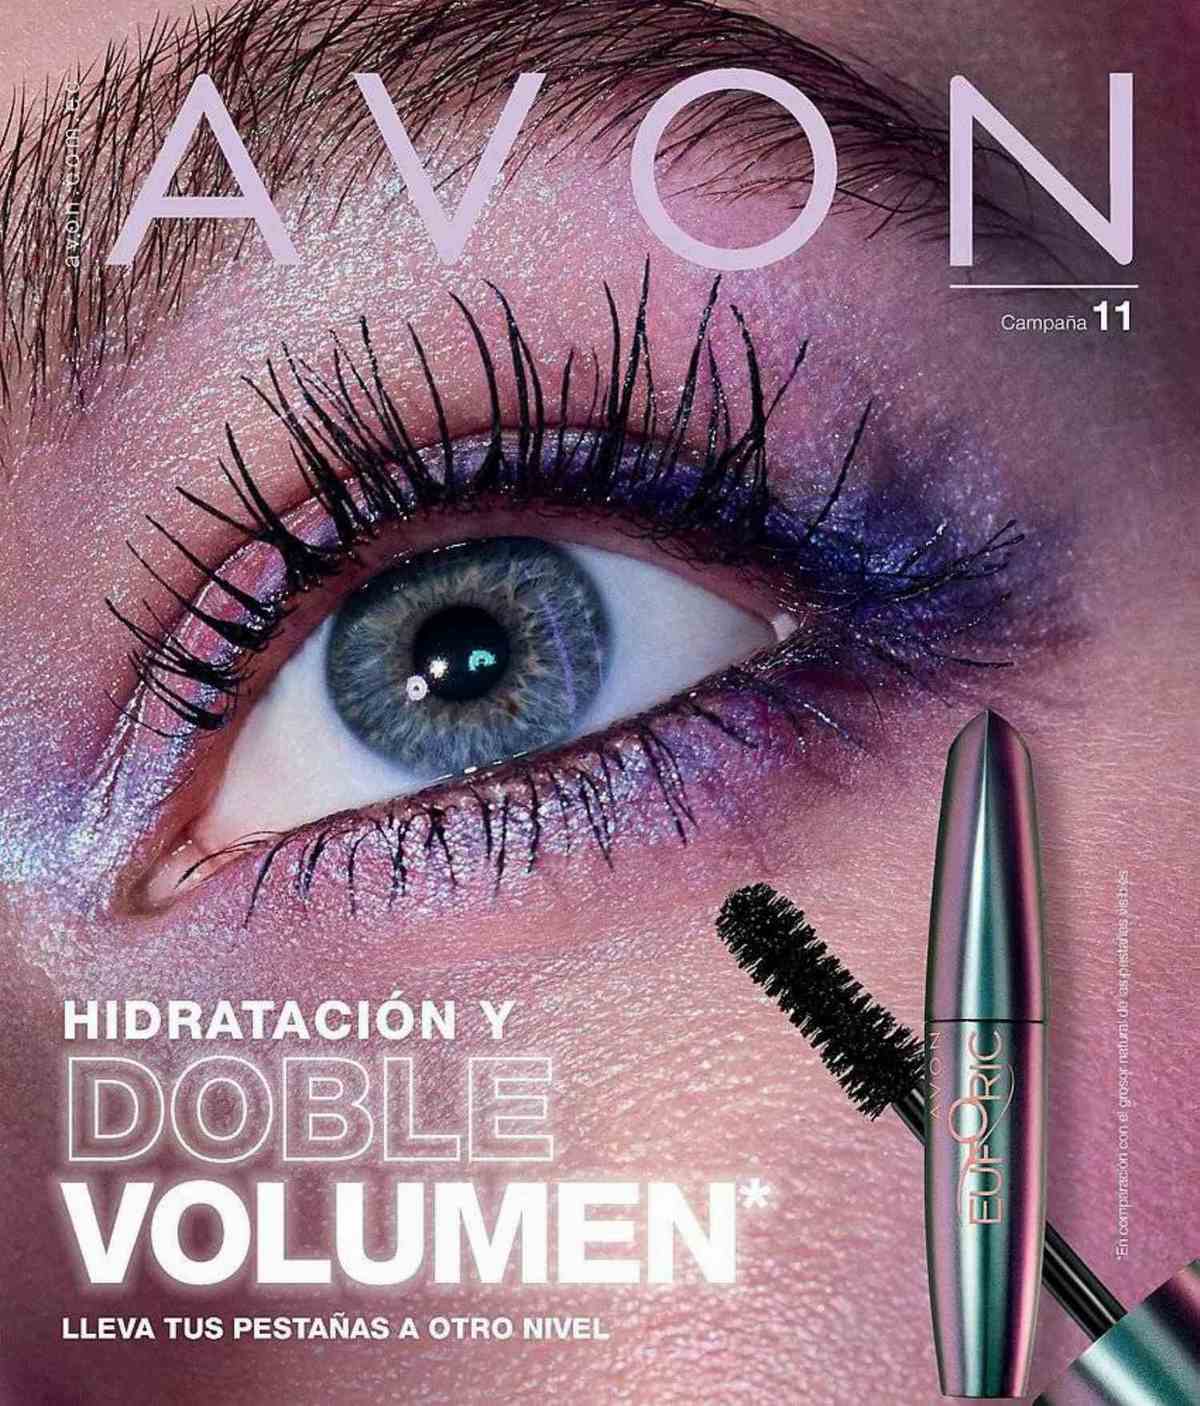 Catalogo Avon Campaña 11 2021 Ecuador